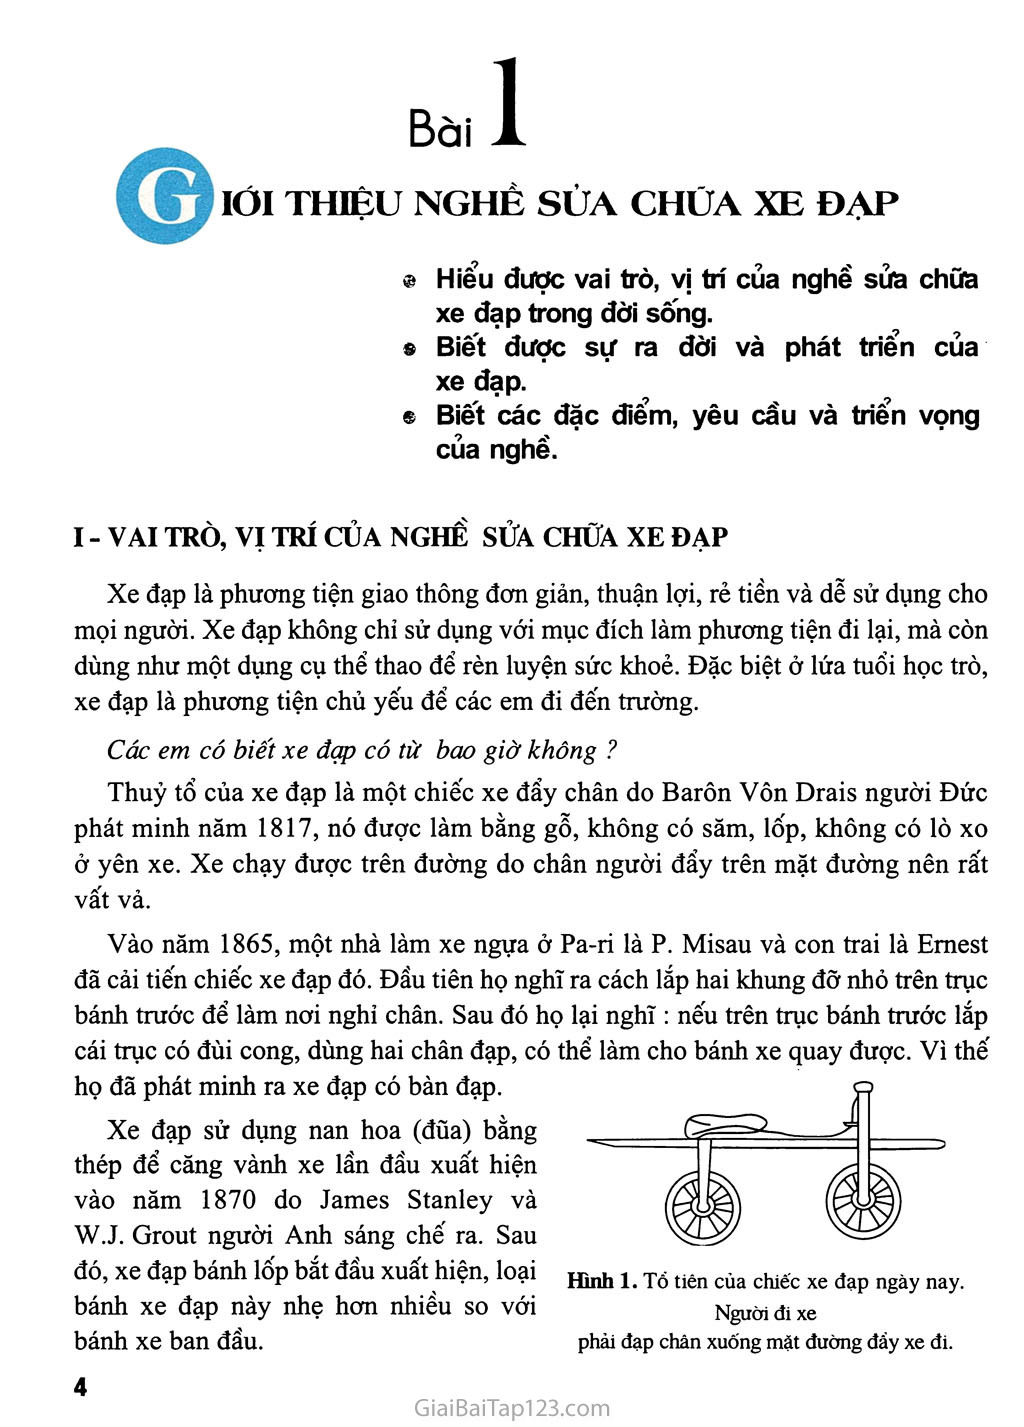 Bài 1. Giới thiệu nghề sửa chữa xe đạp trang 1